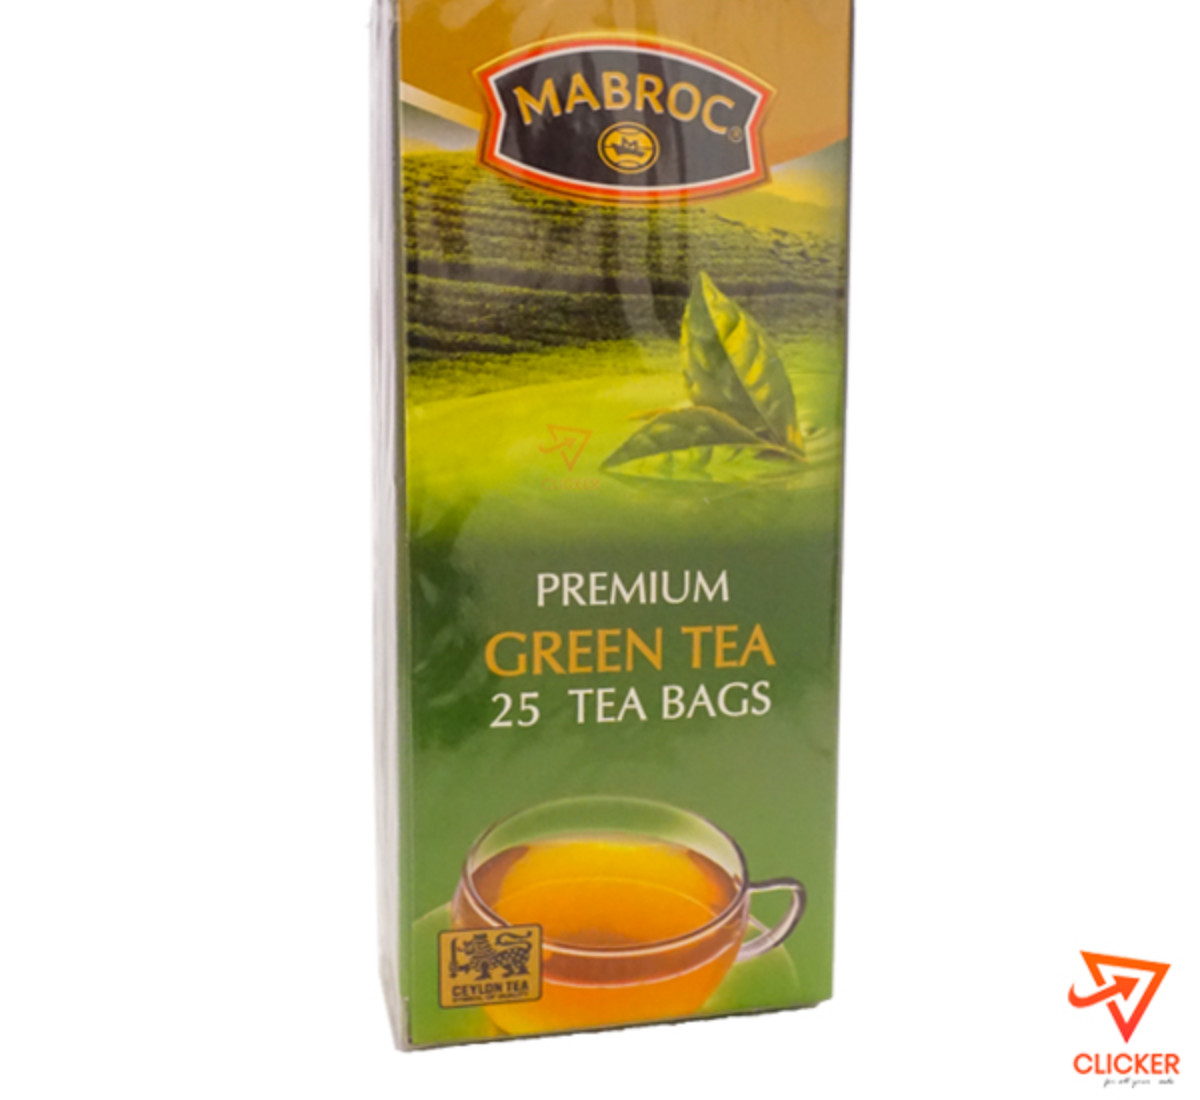 Clicker product MABROC-premium green tea (25 tea bags) 931